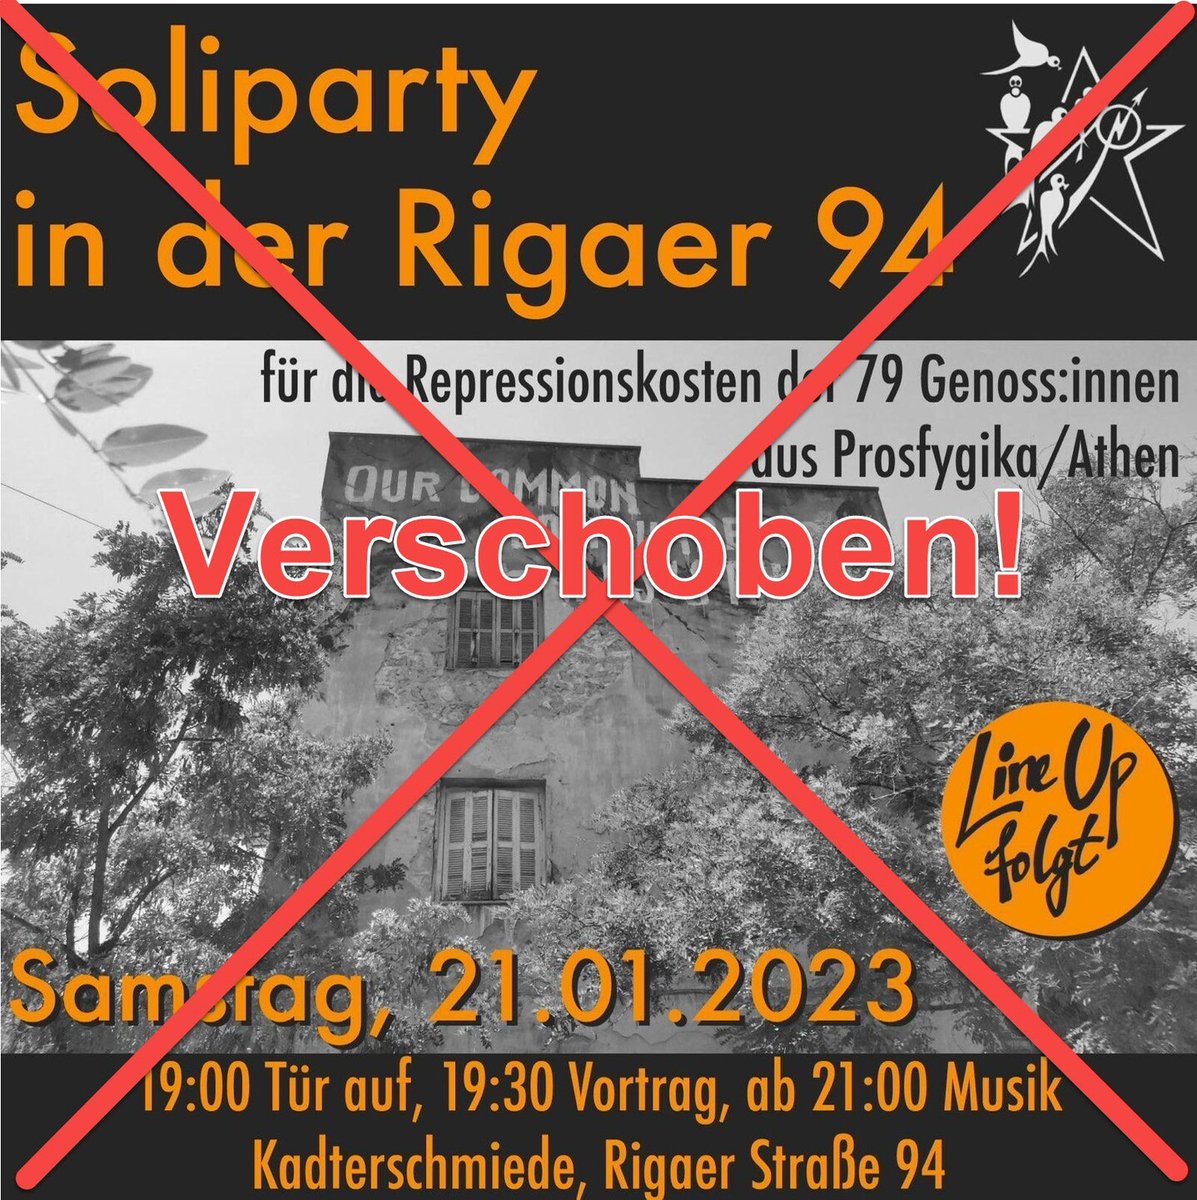 ⚠️ VERSCHOBEN! ⚠️ 

🔥 Soliparty in der Rigaer 94!🔥

#b2101 #prosfigika